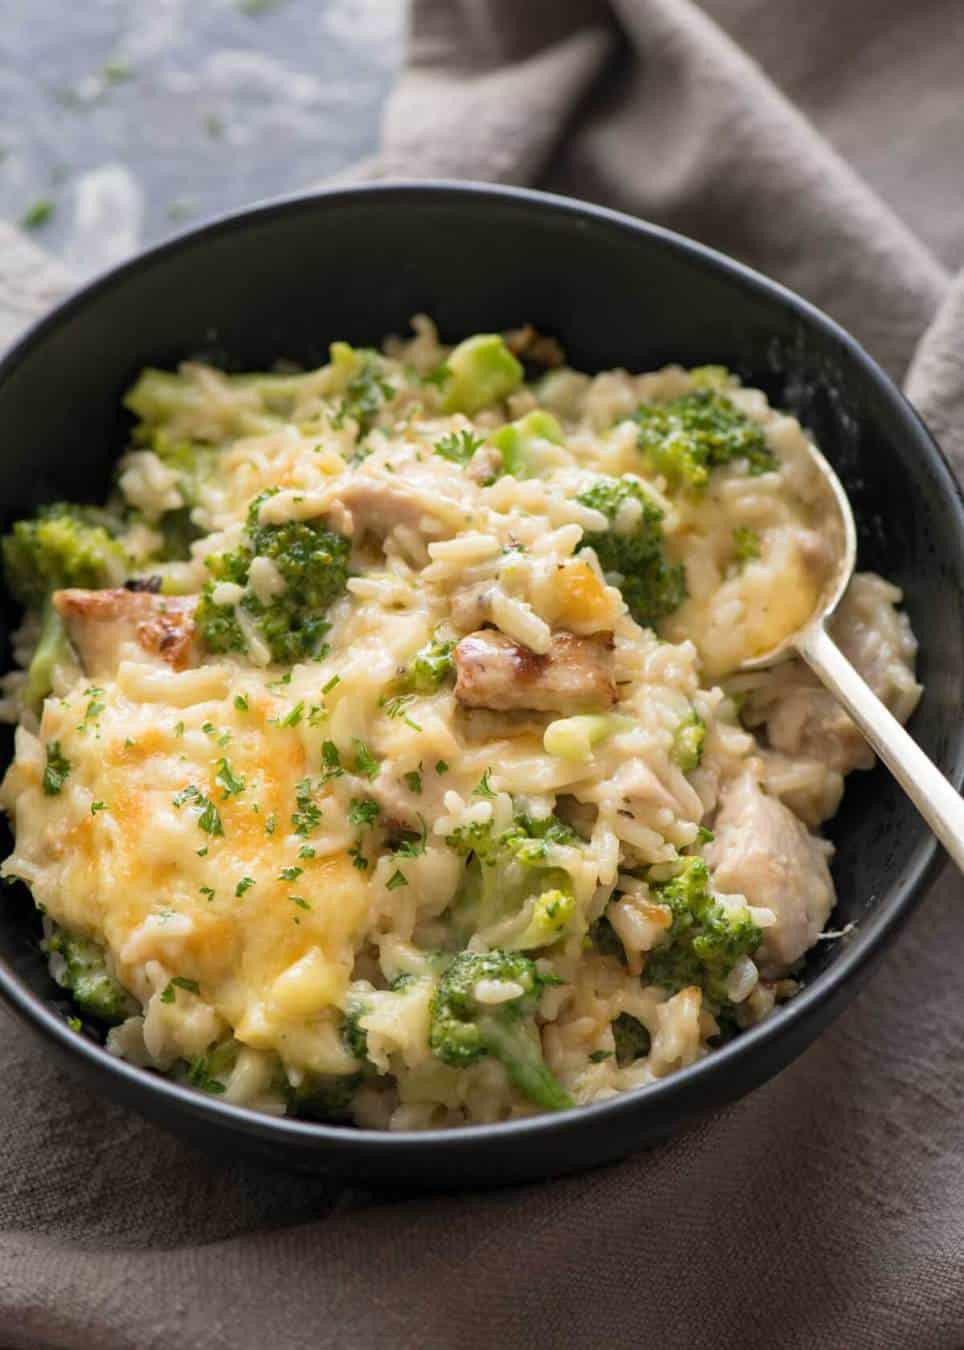 Recipes For Broccoli Rice Casserole
 e Pot Chicken Broccoli Rice Casserole